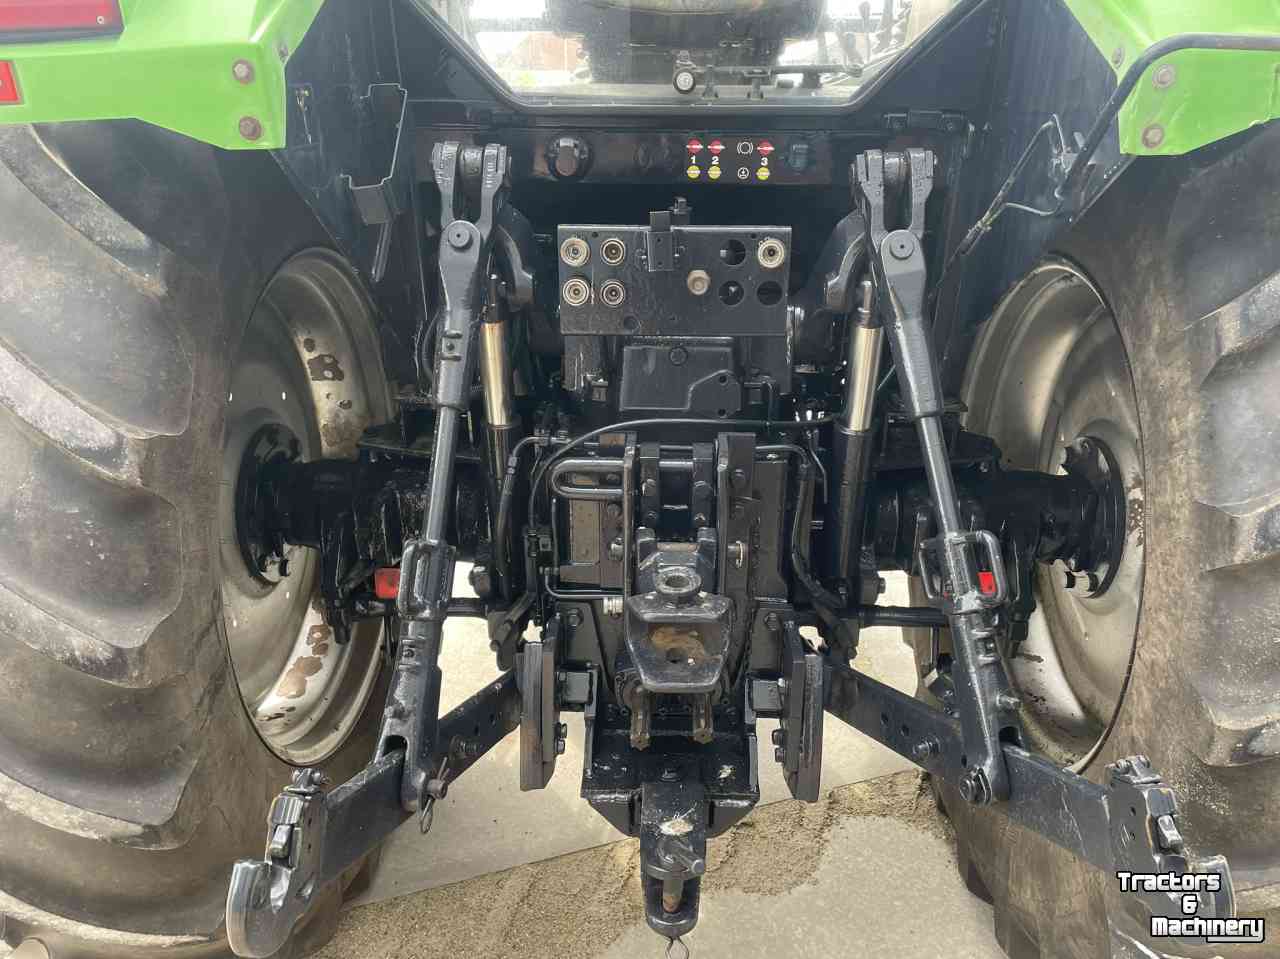 Schlepper / Traktoren Deutz-Fahr Agrostar DX 6.11